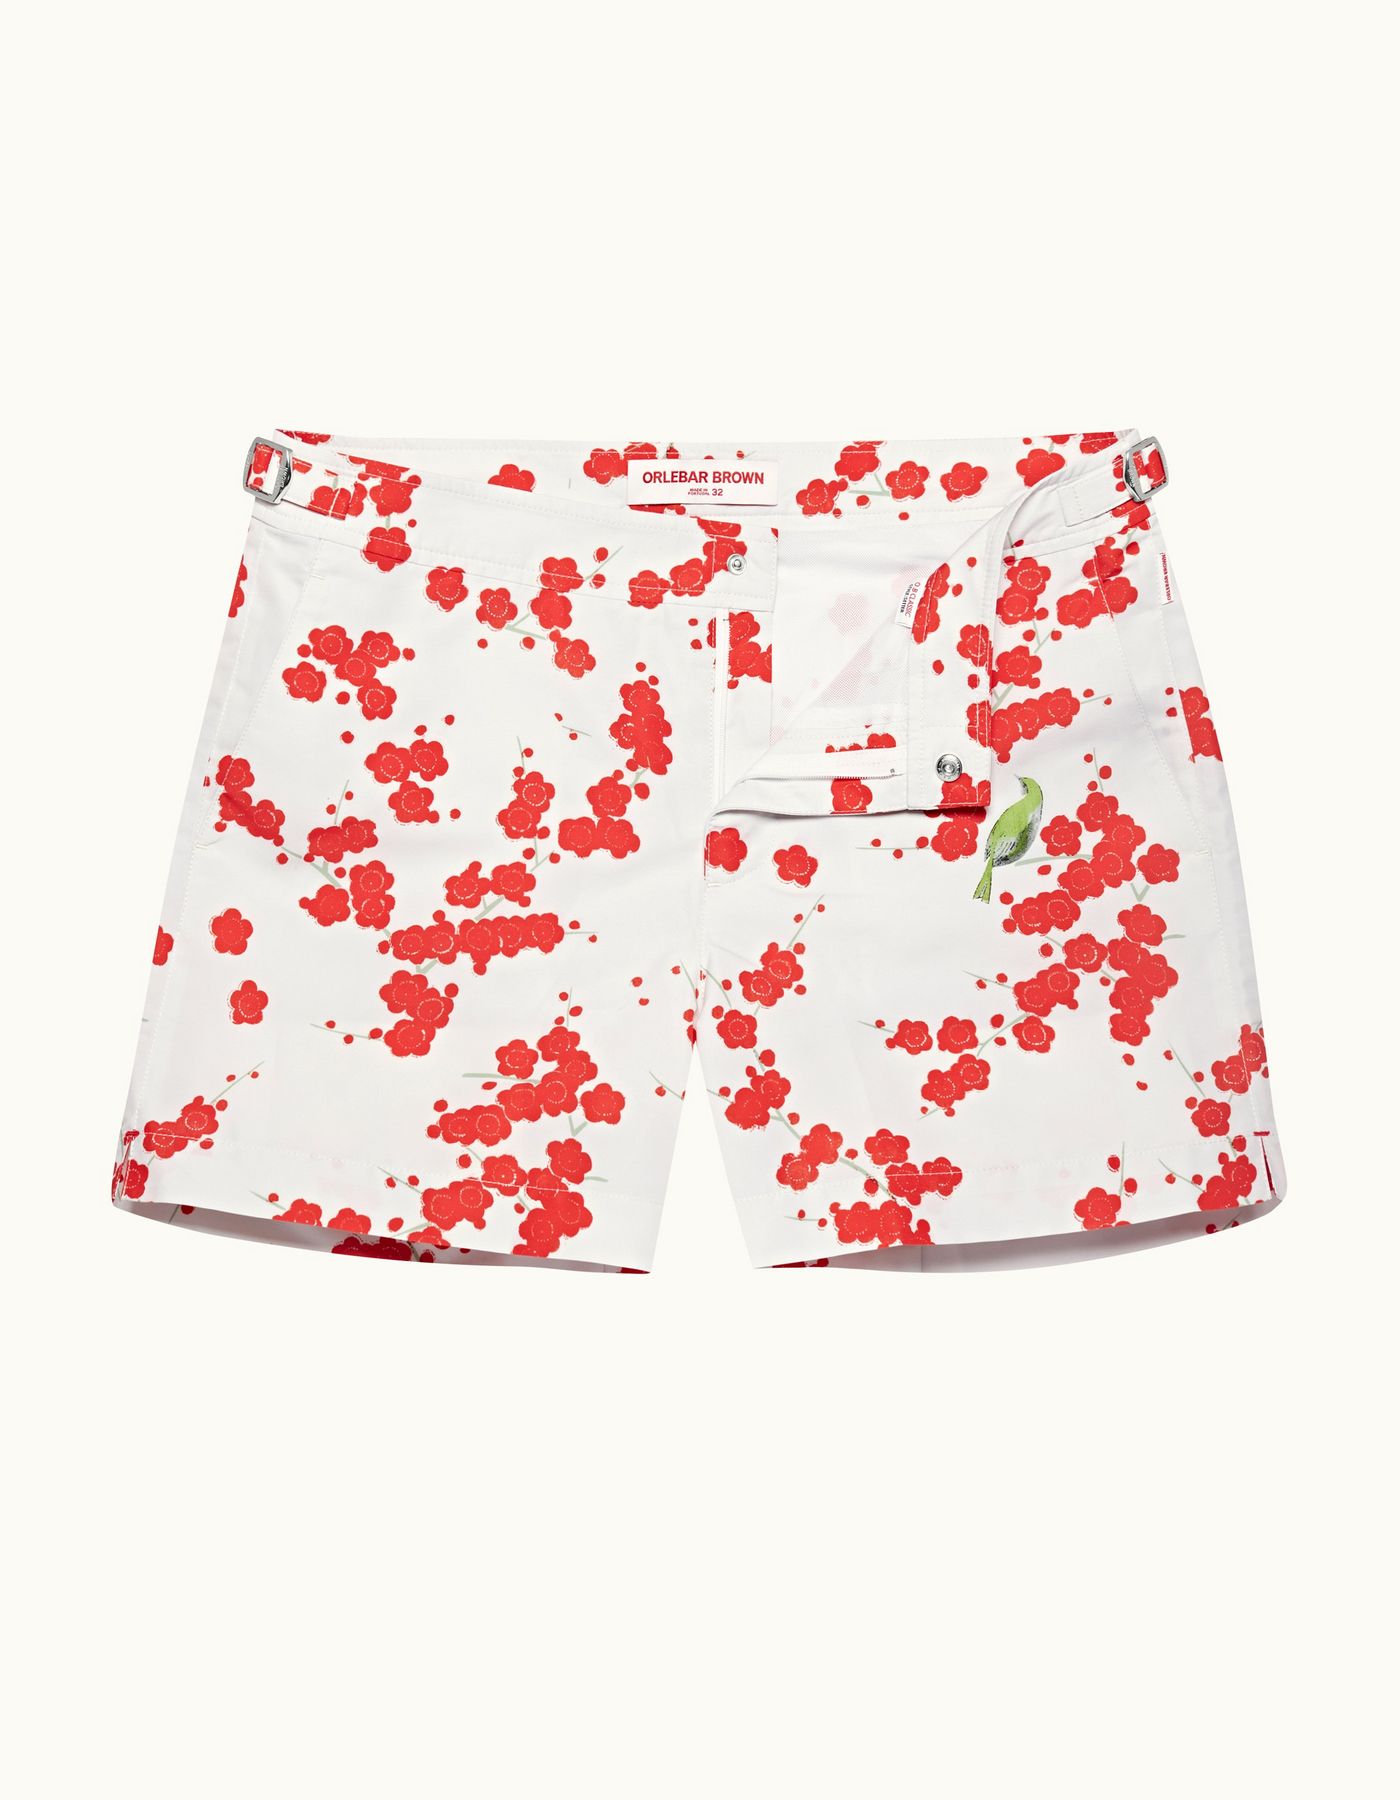 Setter - Mens Blossom Print Shorter-Length Swim Shorts In Red Plum Colour